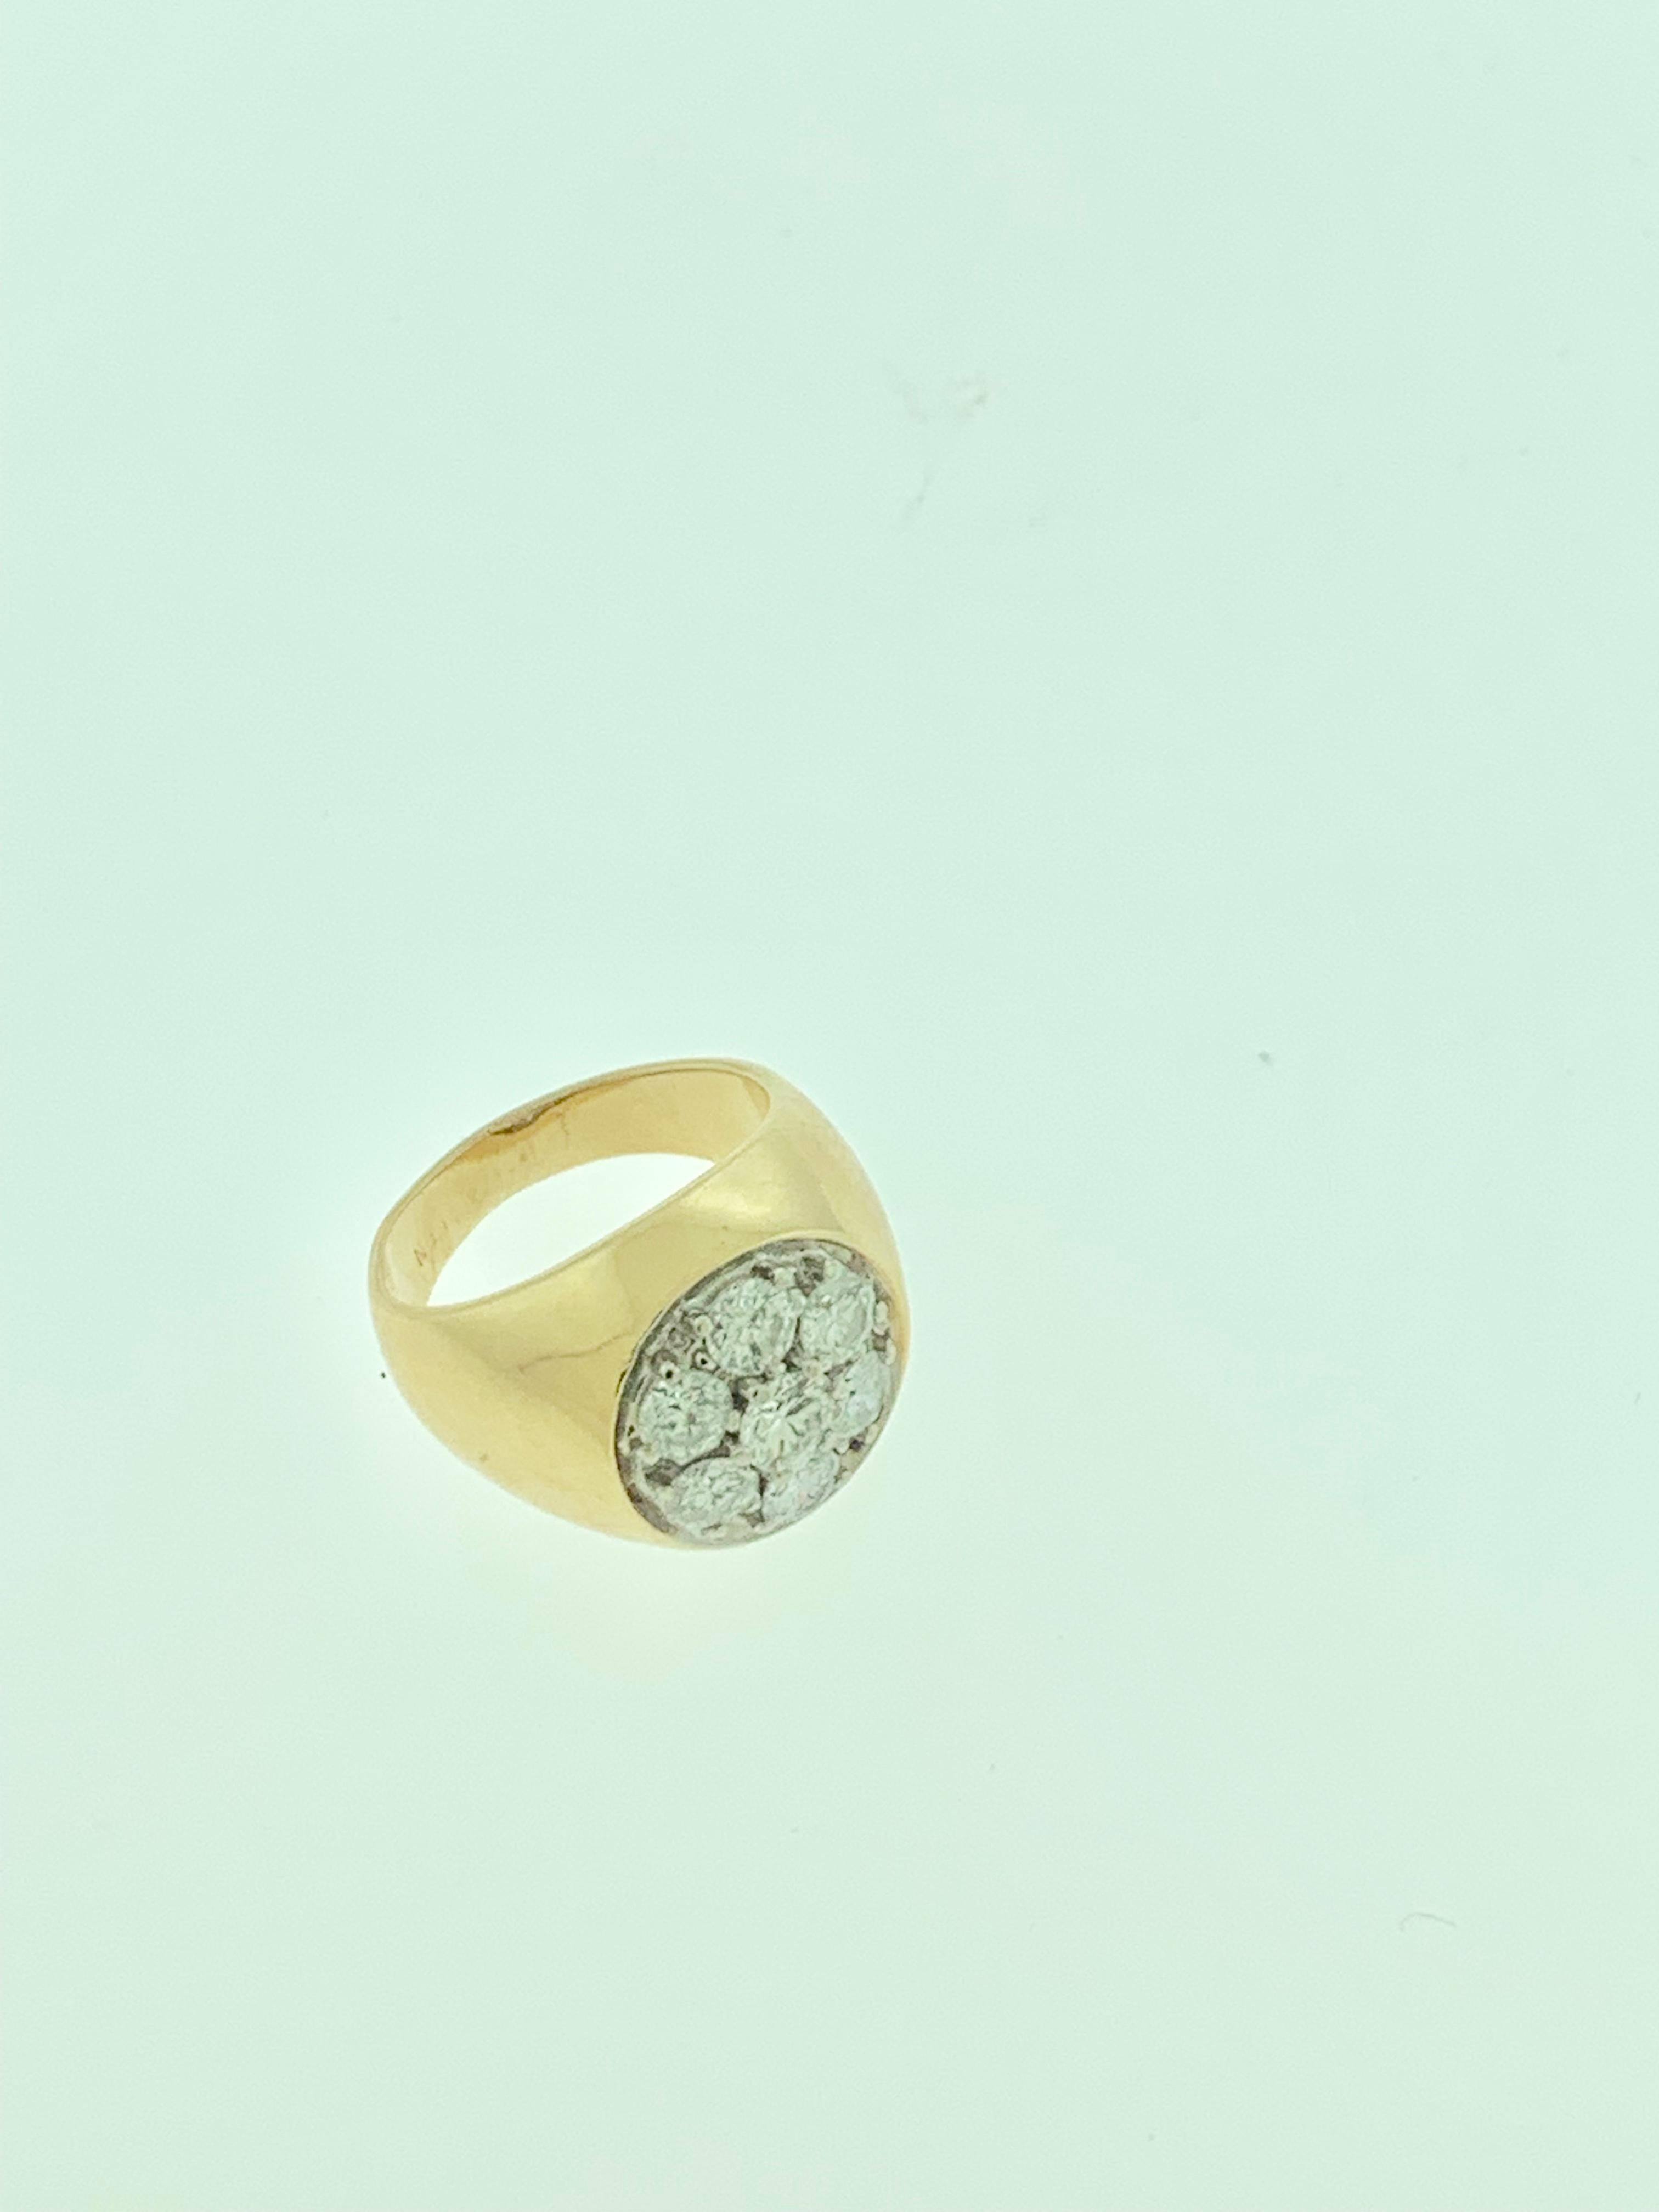 Round Cut 1.7 Carat, 7 Diamonds Traditional Men's Ring 14 Karat Yellow Gold Ring Estate For Sale